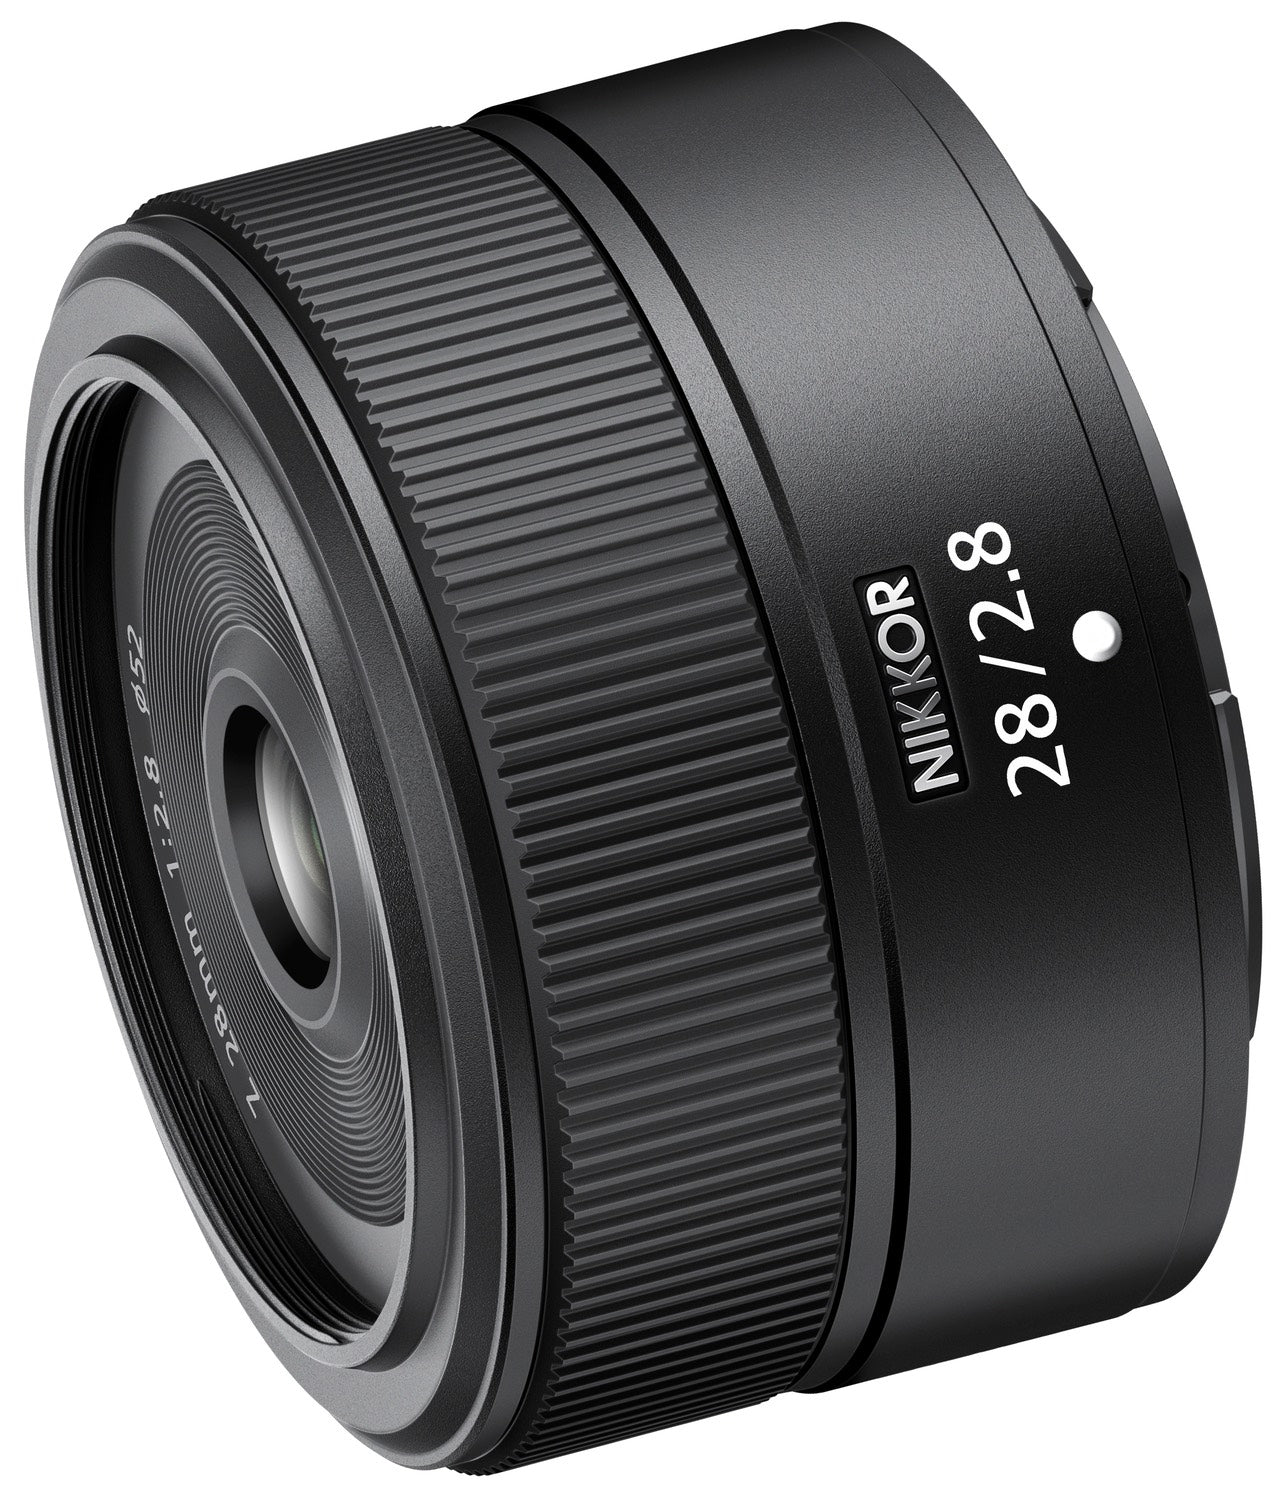 Nikon Z 28mm f2.8 SE lens